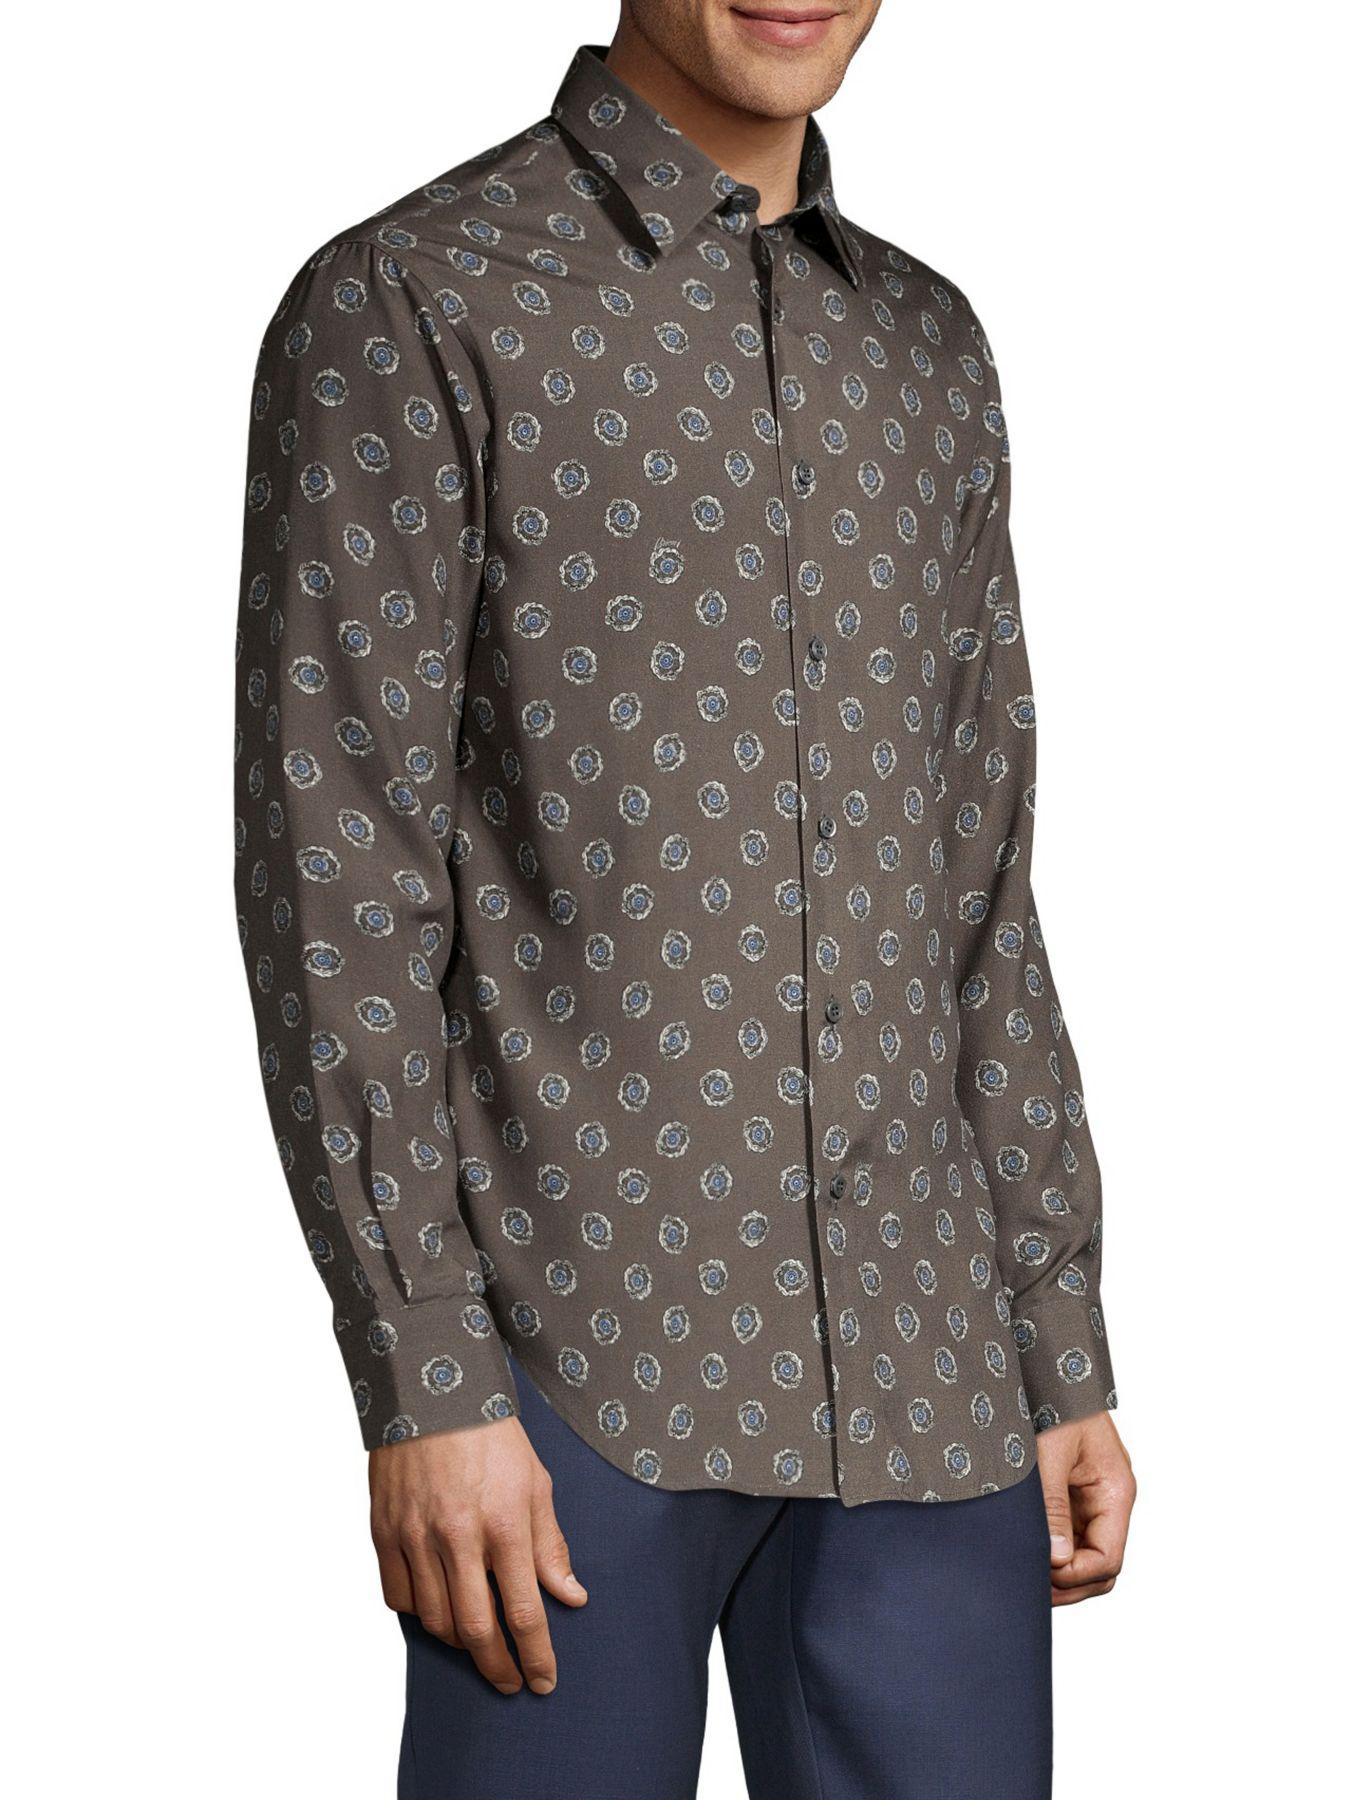 Brioni Medallion-print Silk Shirt in Graphite White (Gray) for Men - Lyst